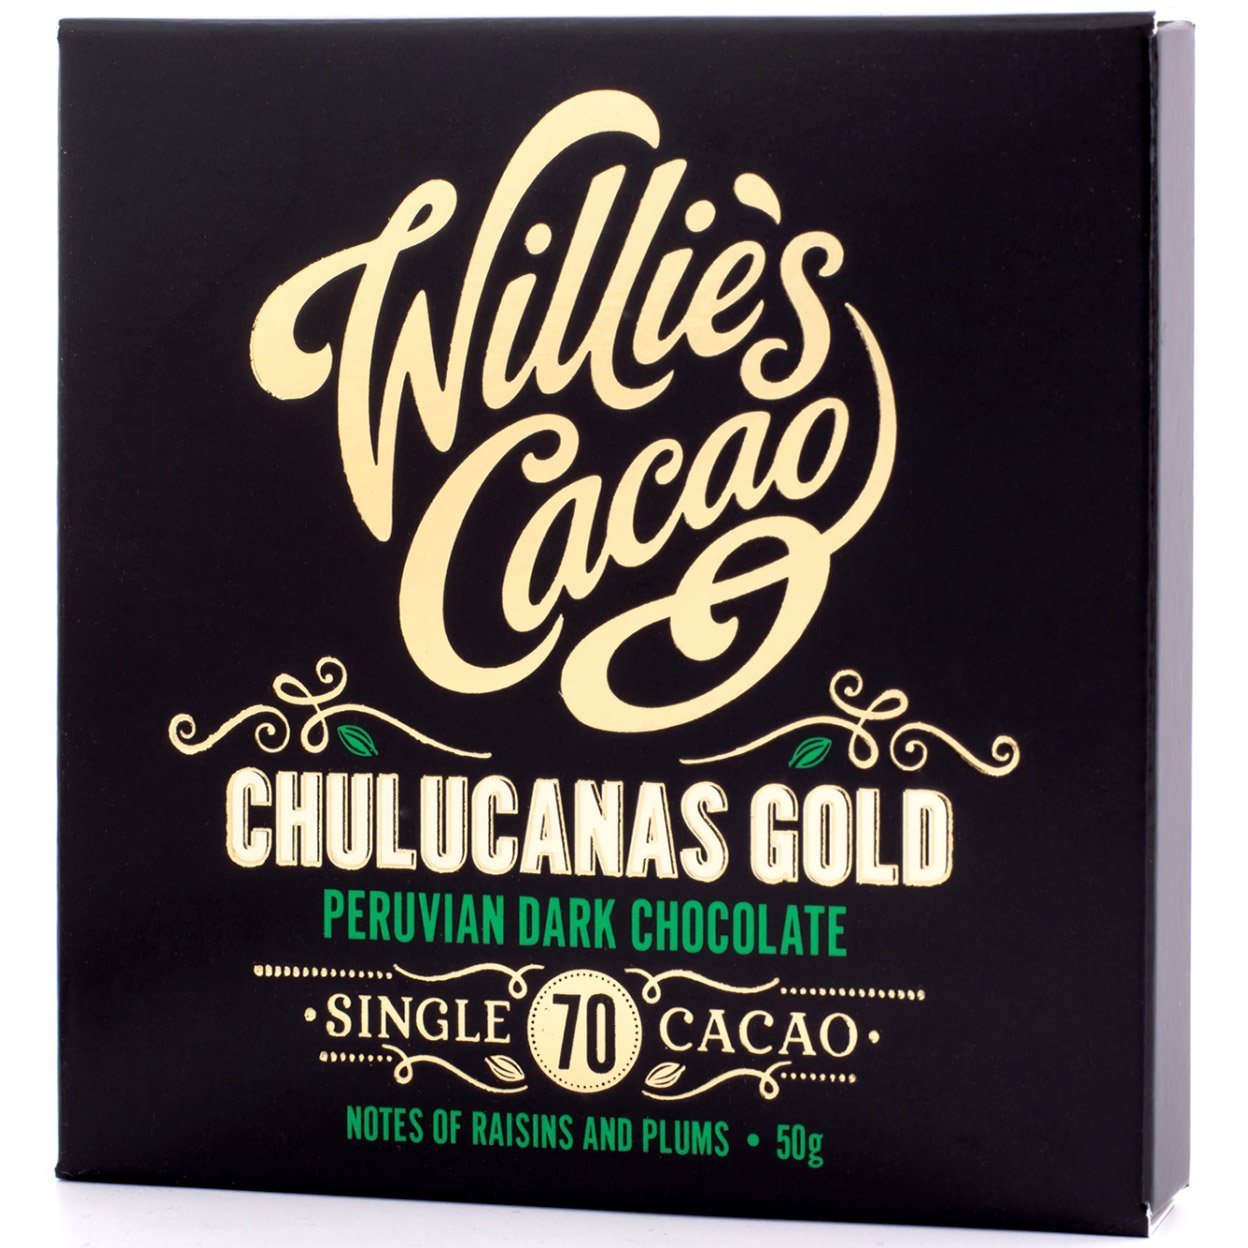 Шоколад чорний Willie's Cacao Chulucanas Gold Peru 70% 50 г (814631) - фото 1